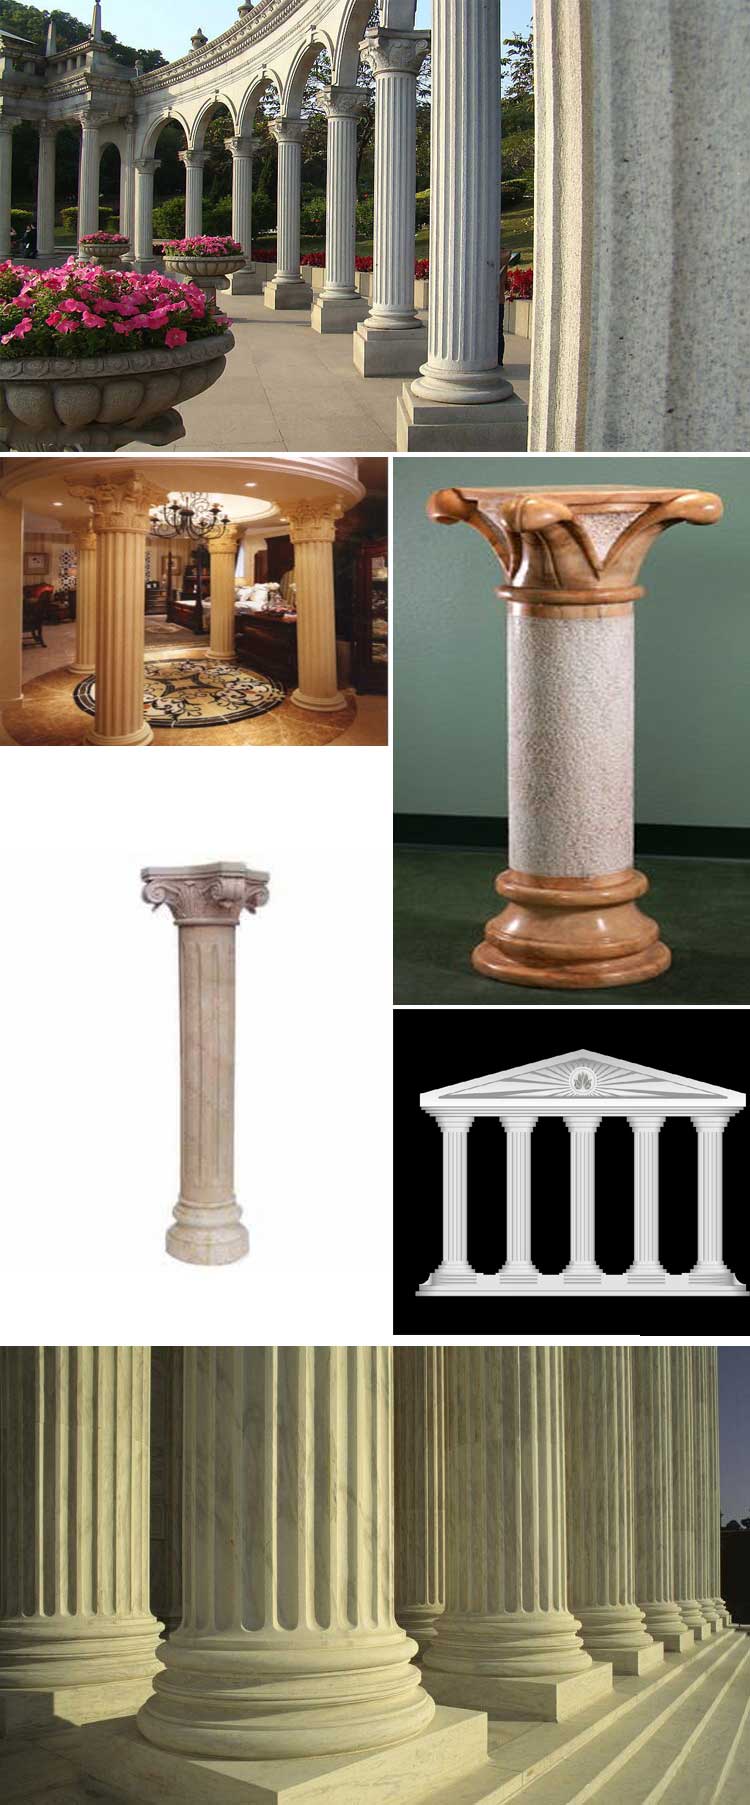 罗马柱由于各部分尺寸,比例,形状的不同,加上柱身处理和装饰花纹的各